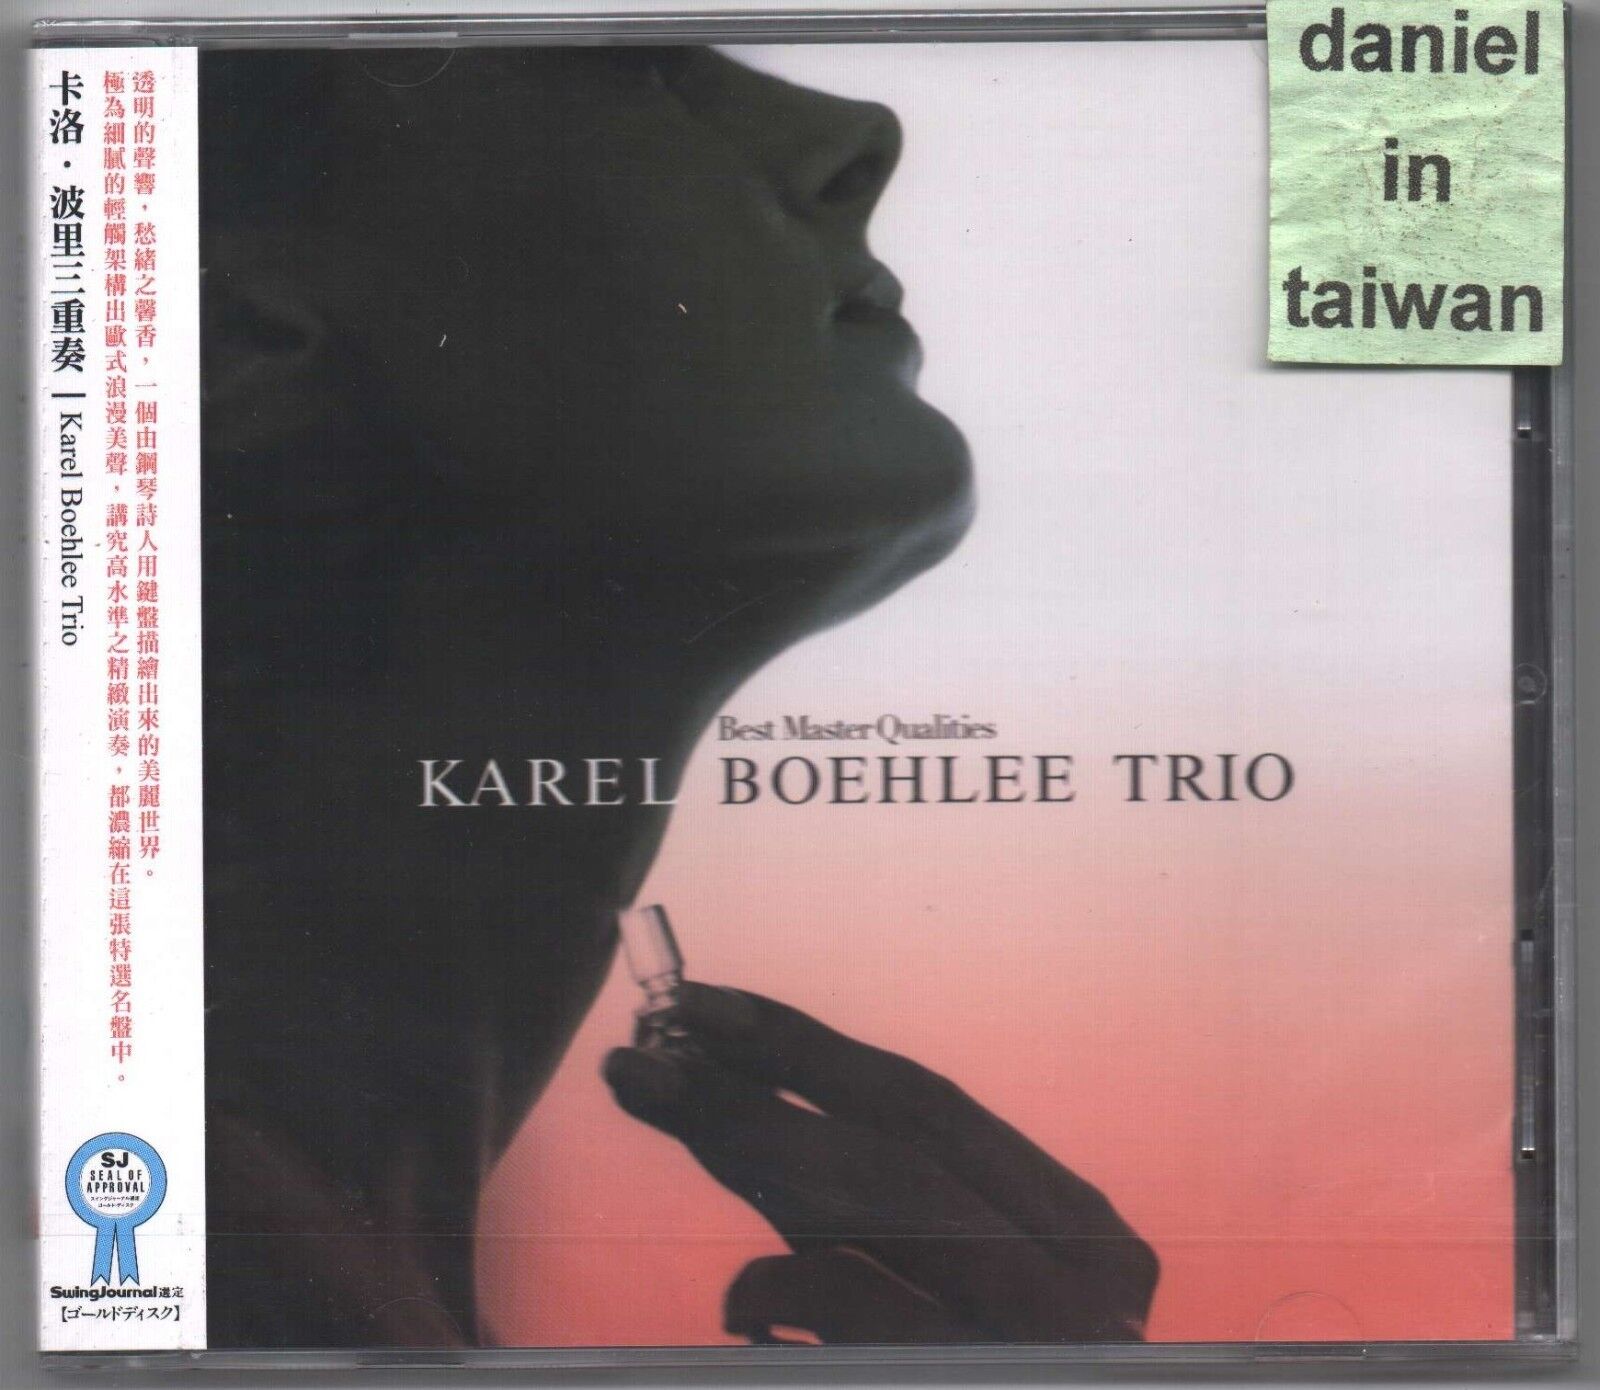 Karel Boehlee Trio: Best Master Qualities - Swing Journal (2013) CD OBI TAIWAN